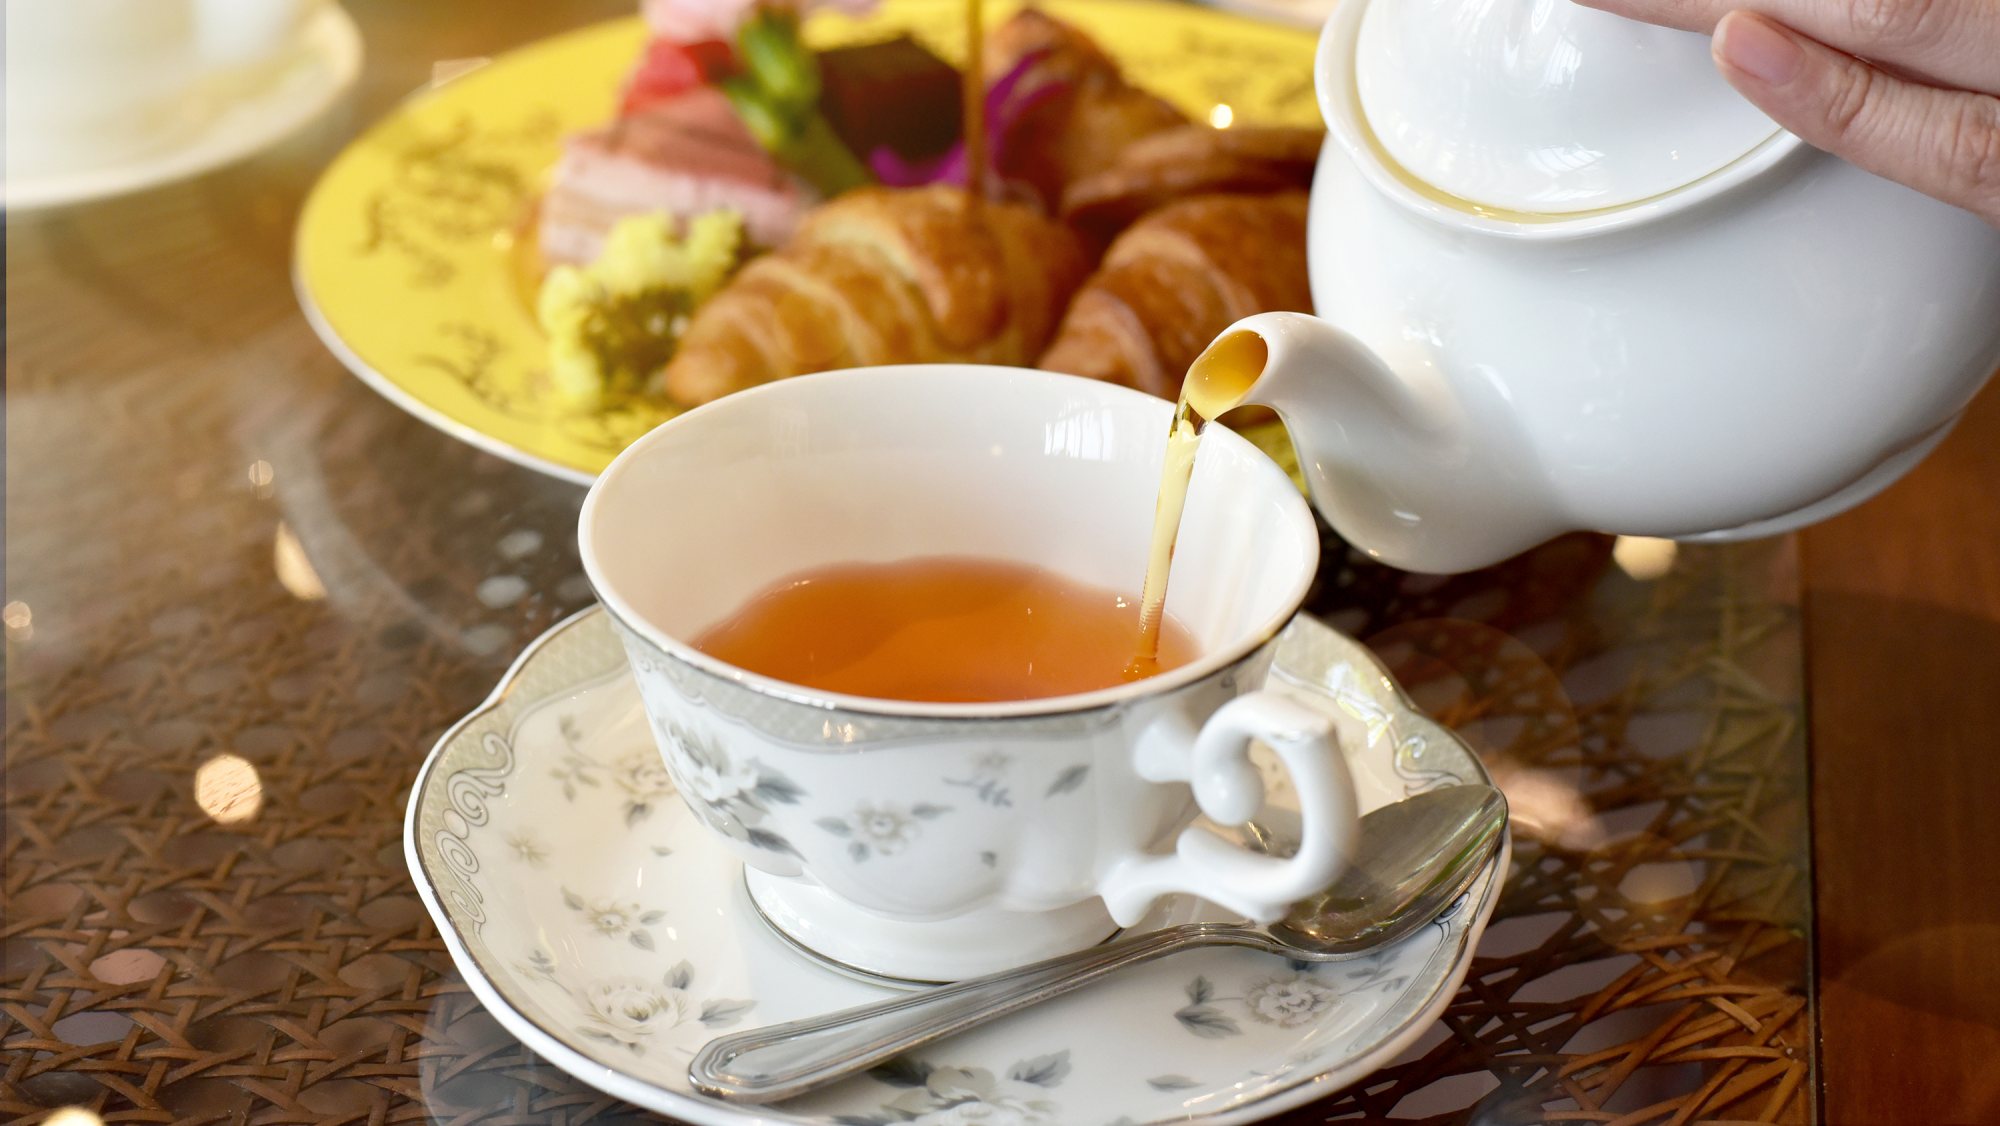 Em geral, o chá contém substâncias úteis conhecidas por reduzir a inflamação